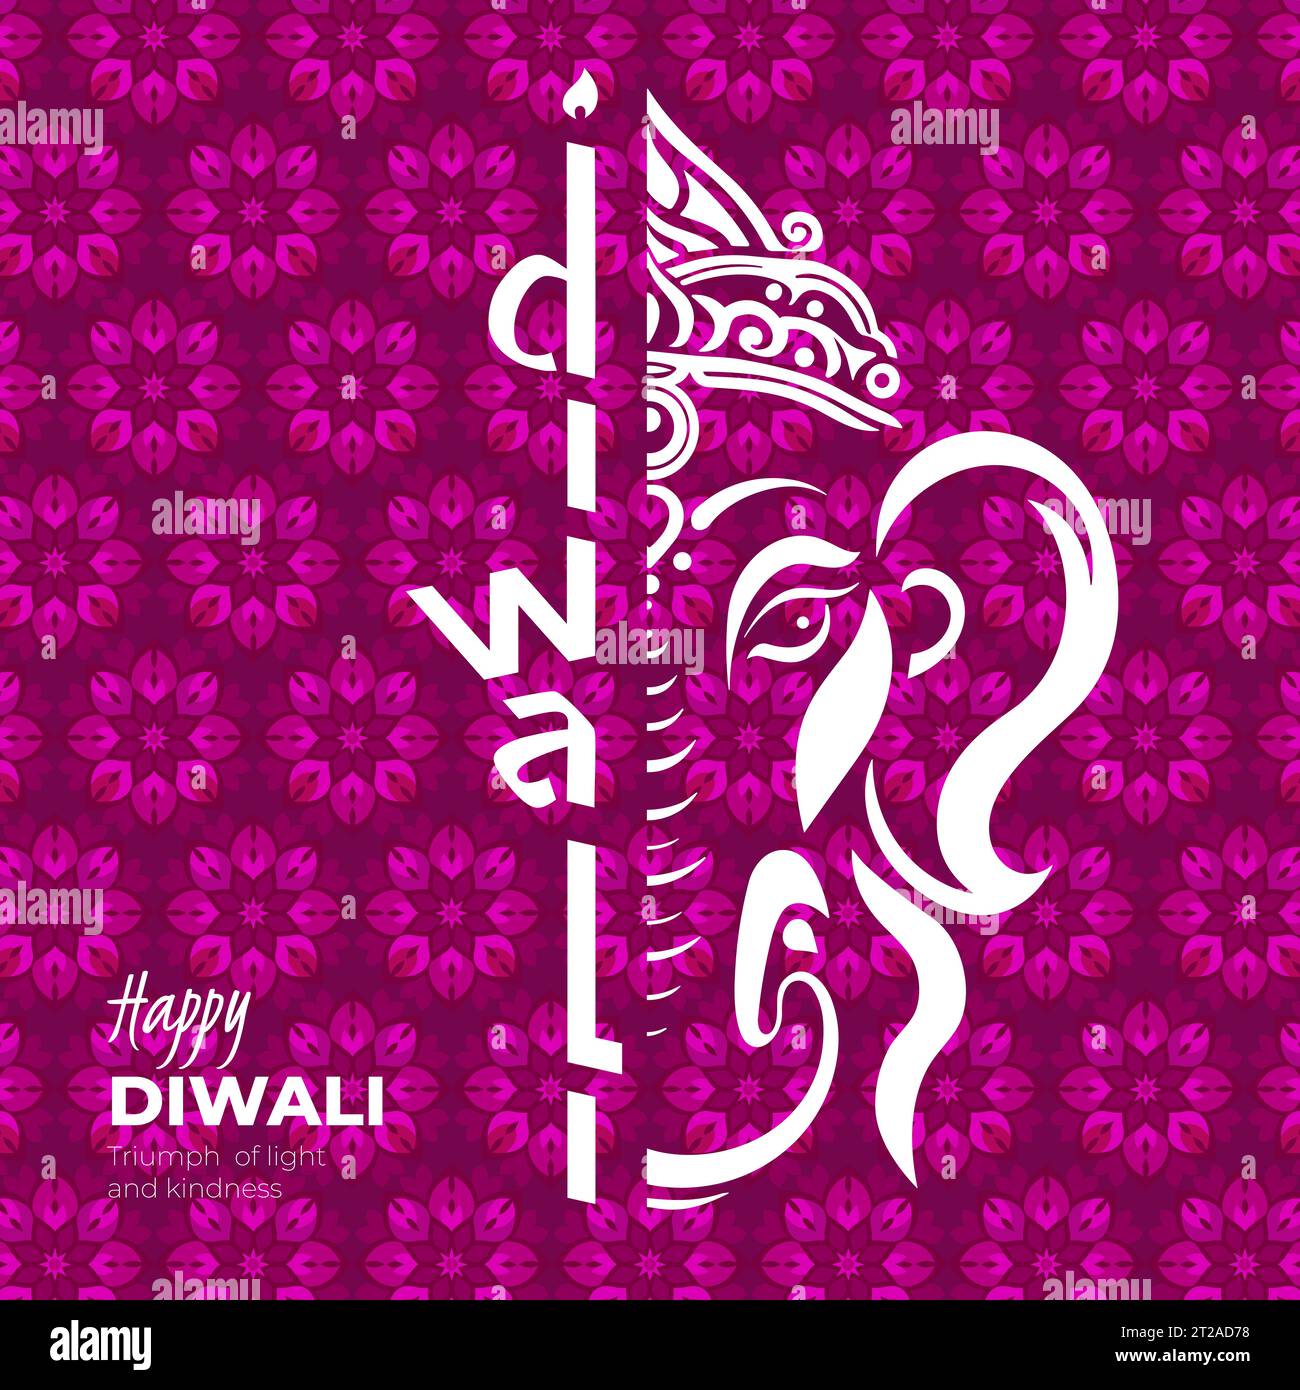 Carte carrée Happy Diwali de vacances indienne. Deepavali Inde festival de la bannière de lumières. Éléphant de divinité Ganesha sur fond de motif floral. Carte de voeux de célébration traditionnelle hindoue. Conception Vector eps Illustration de Vecteur